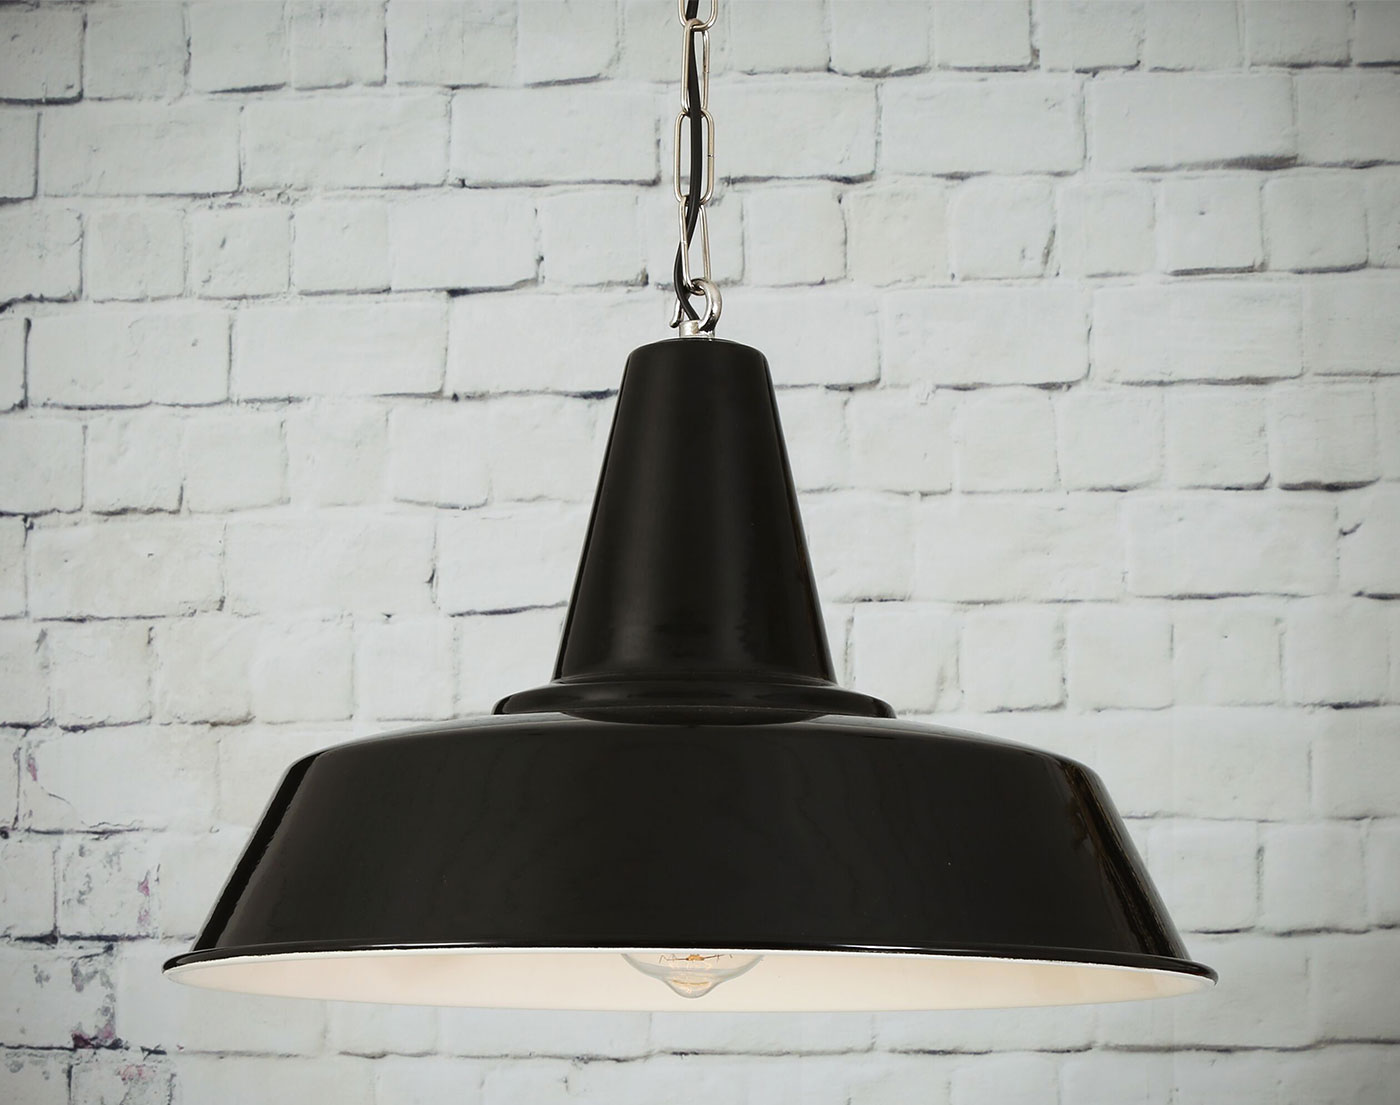 Schwarze Industriestil-Pendelleuchte 40 cm mit Kette: Industrial Style-Lampe in typischem Schwarz pulverlackiert, mit vernickelter Kette